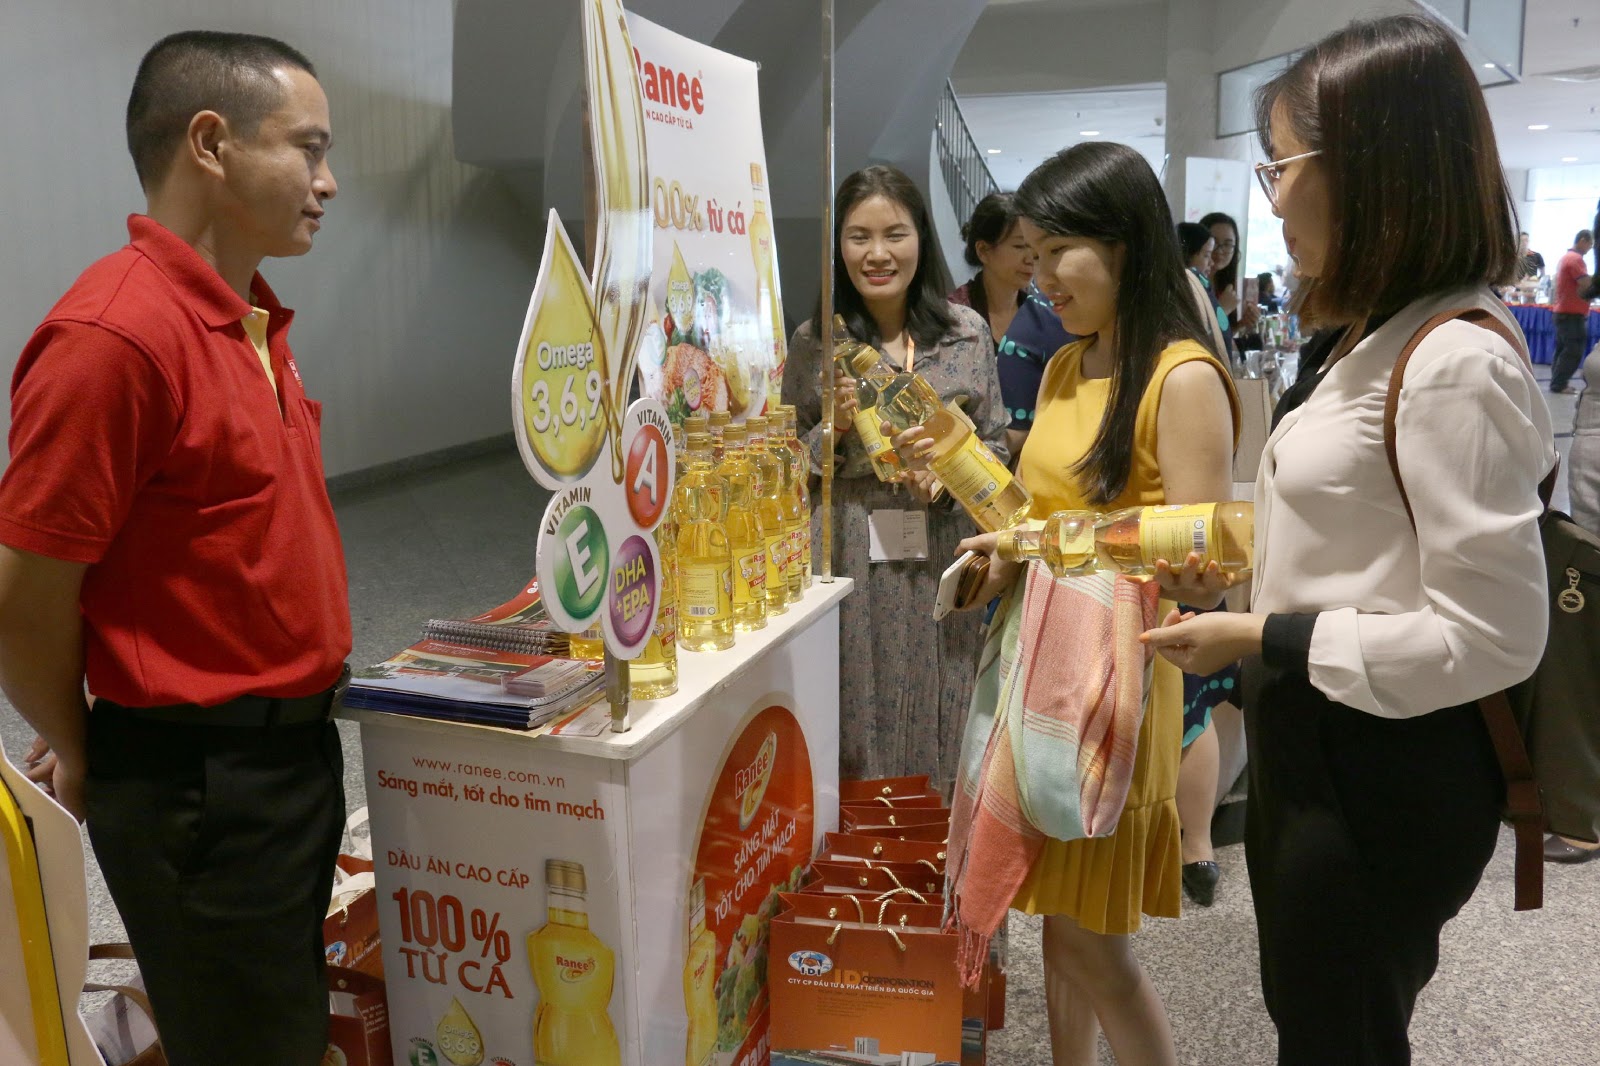 Dầu ăn cao cấp Ranee thu hút người tiêu dùng tại Hội nghị Quốc tế Công nghiệp thực phẩm Việt Nam